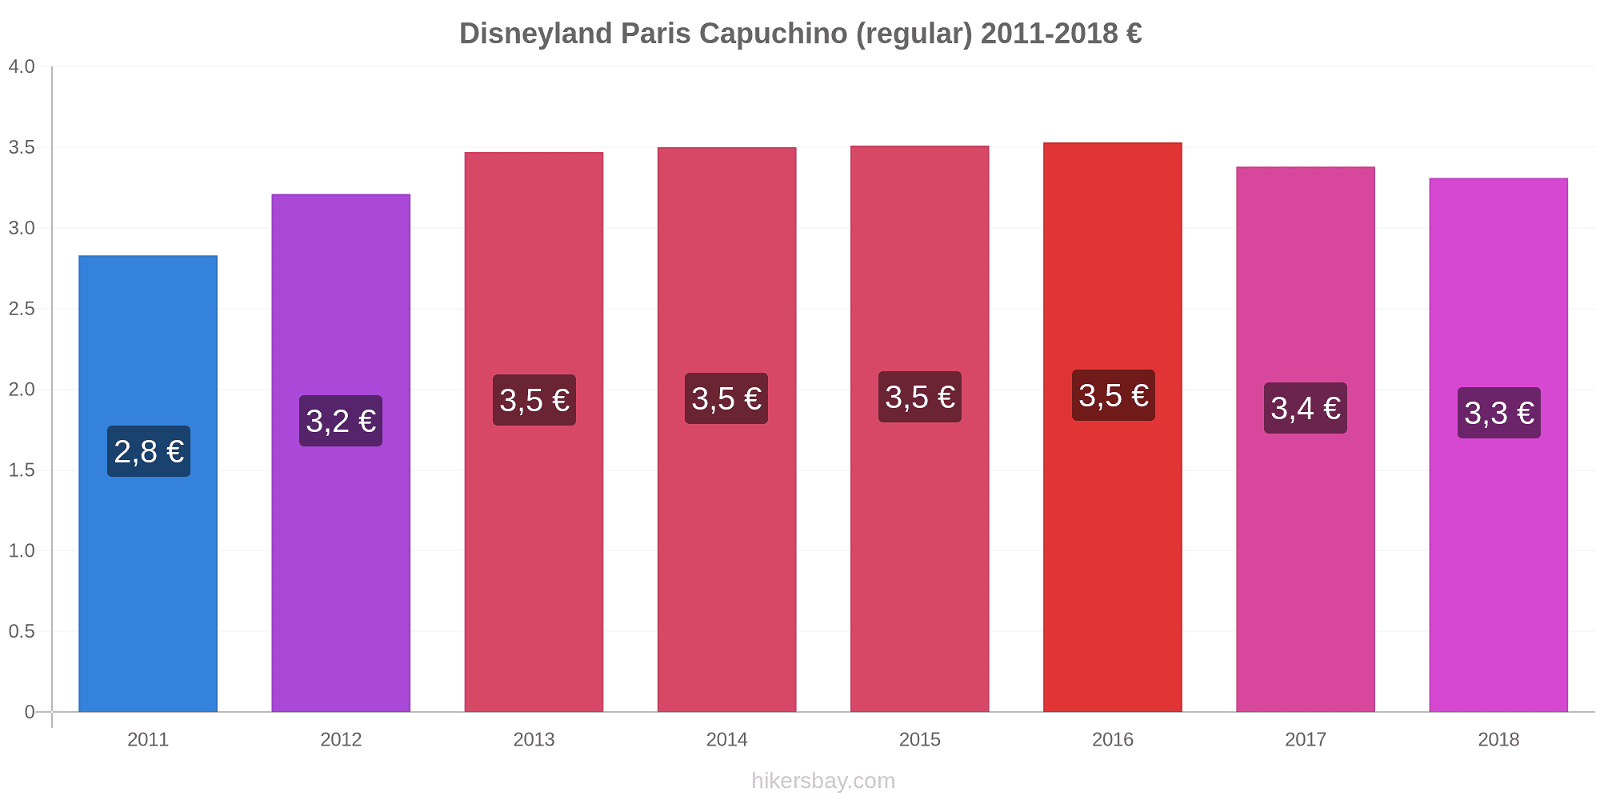 Disneyland Paris cambios de precios Capuchino (regular) hikersbay.com